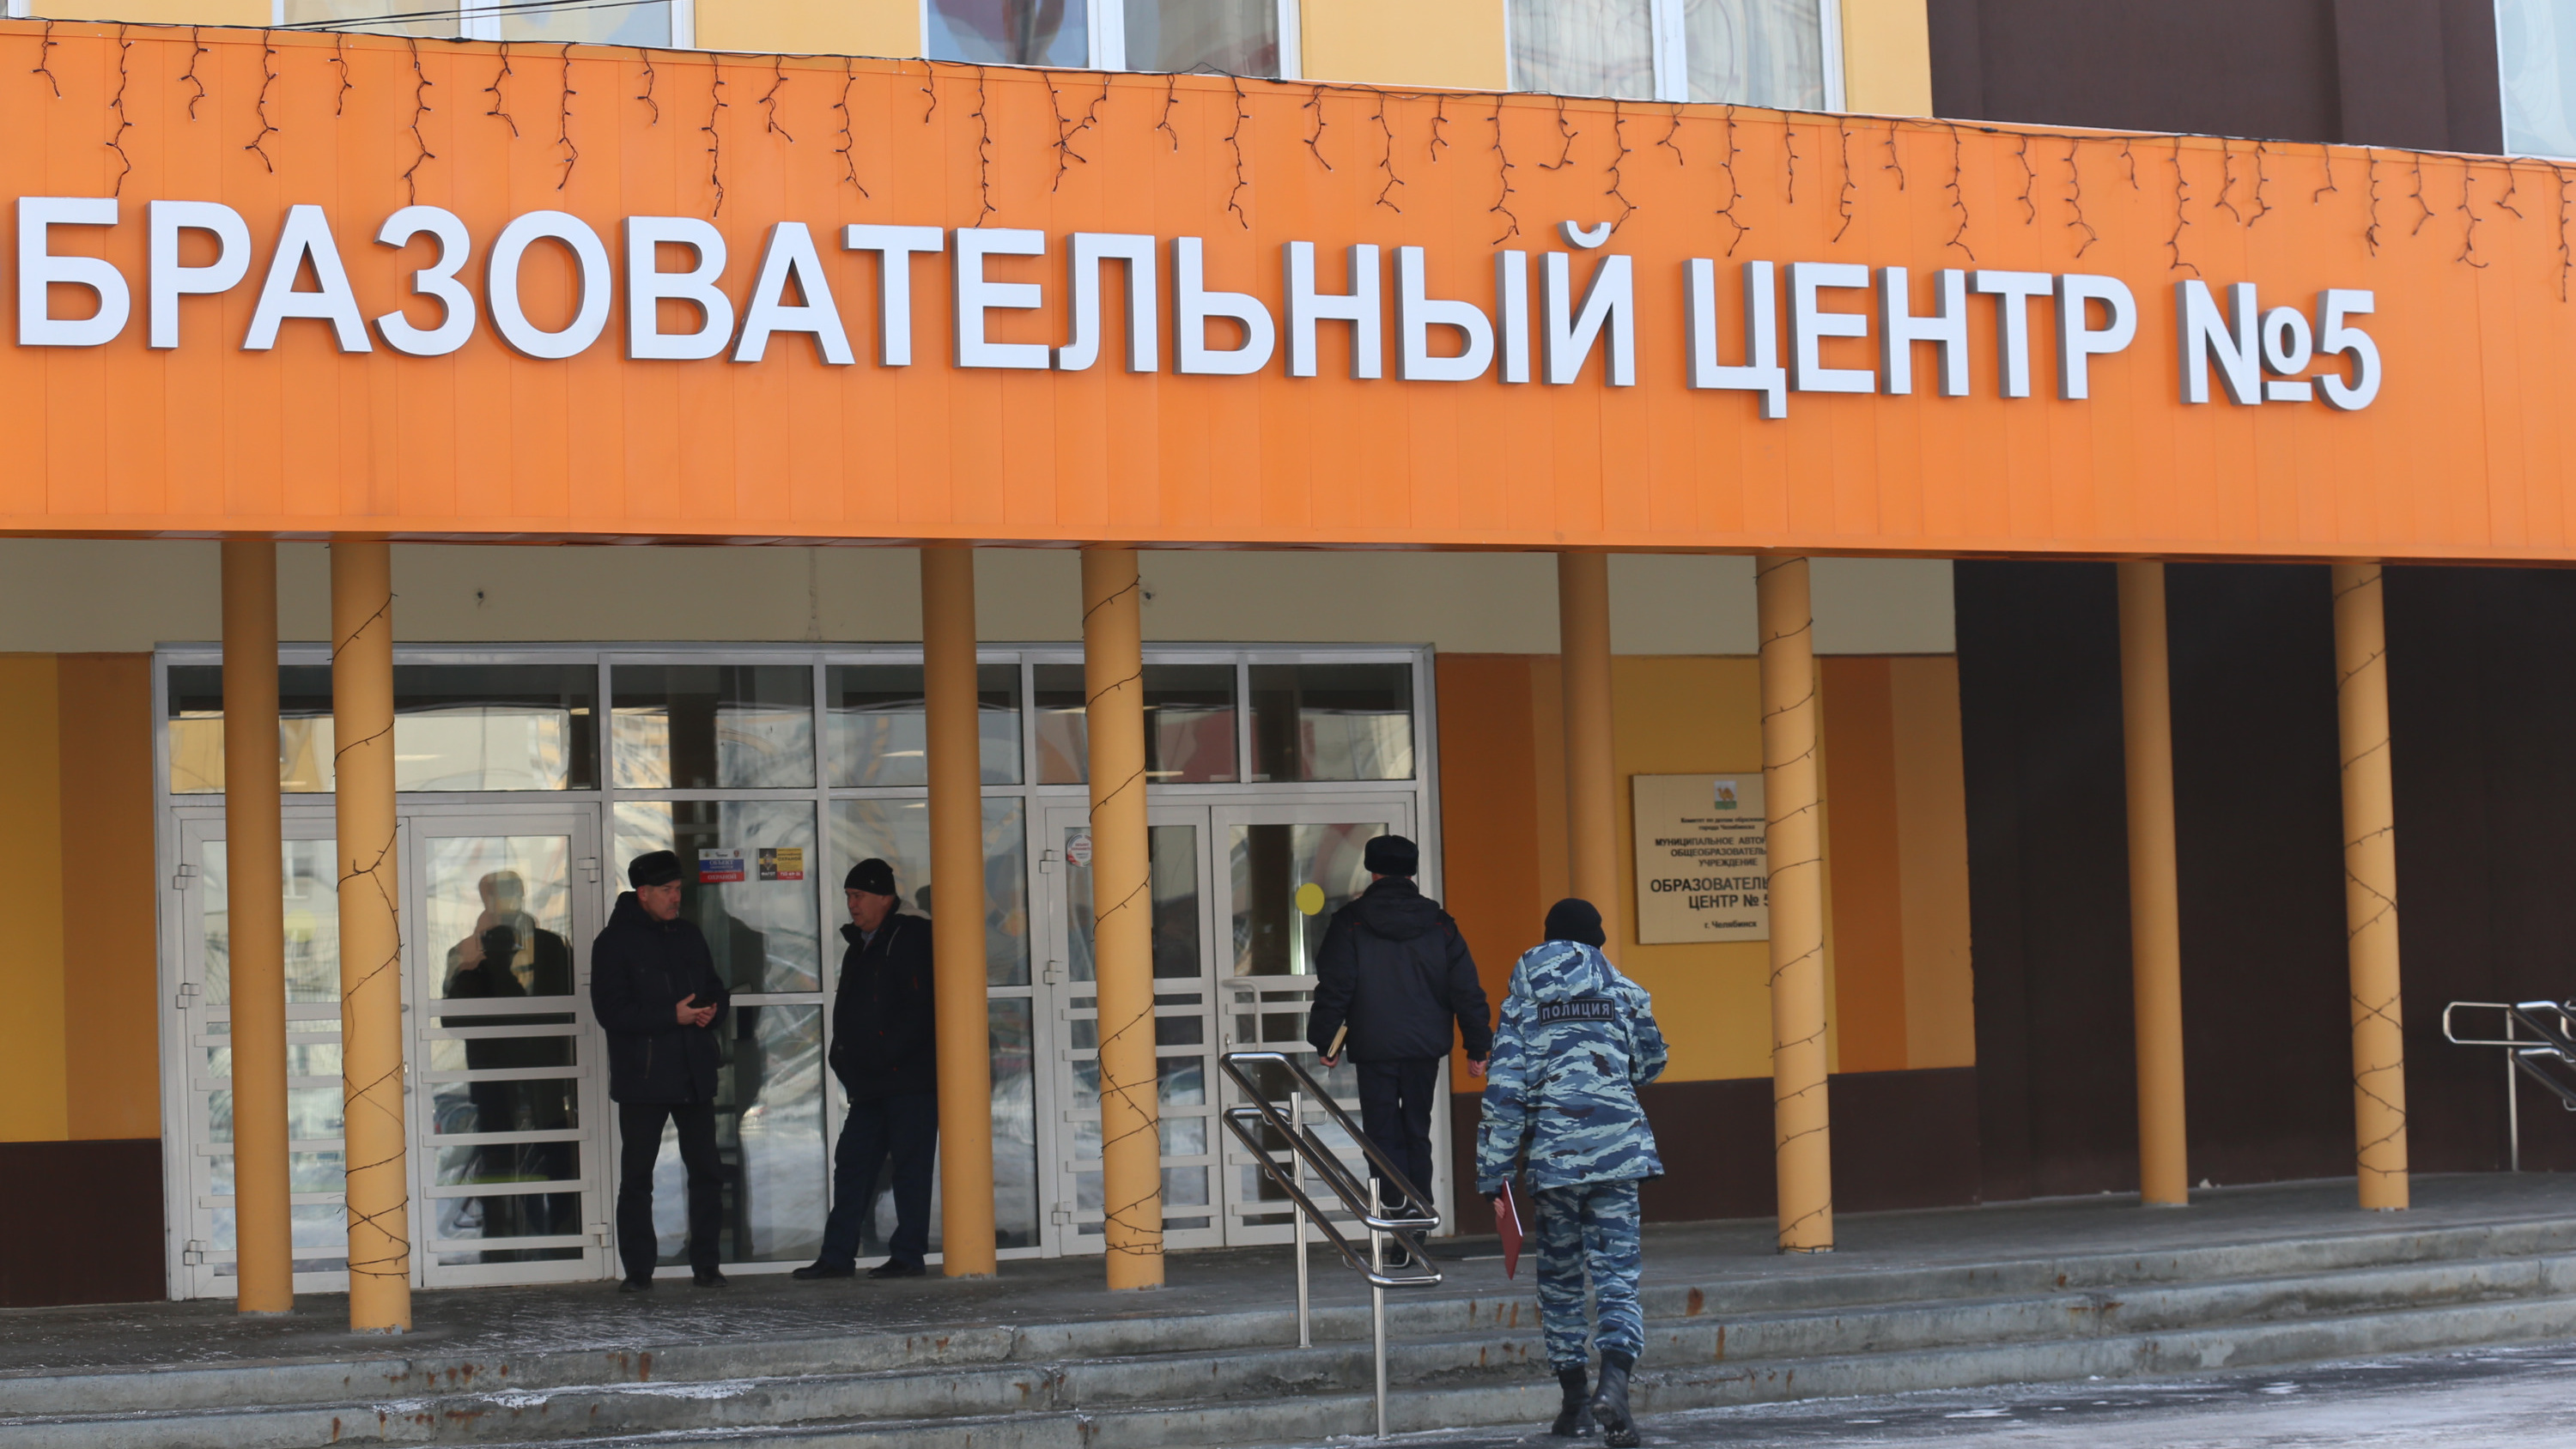 Люди в масках и с пистолетом напали на детей в школе в Челябинске. Кто это был и как их задержали — видео